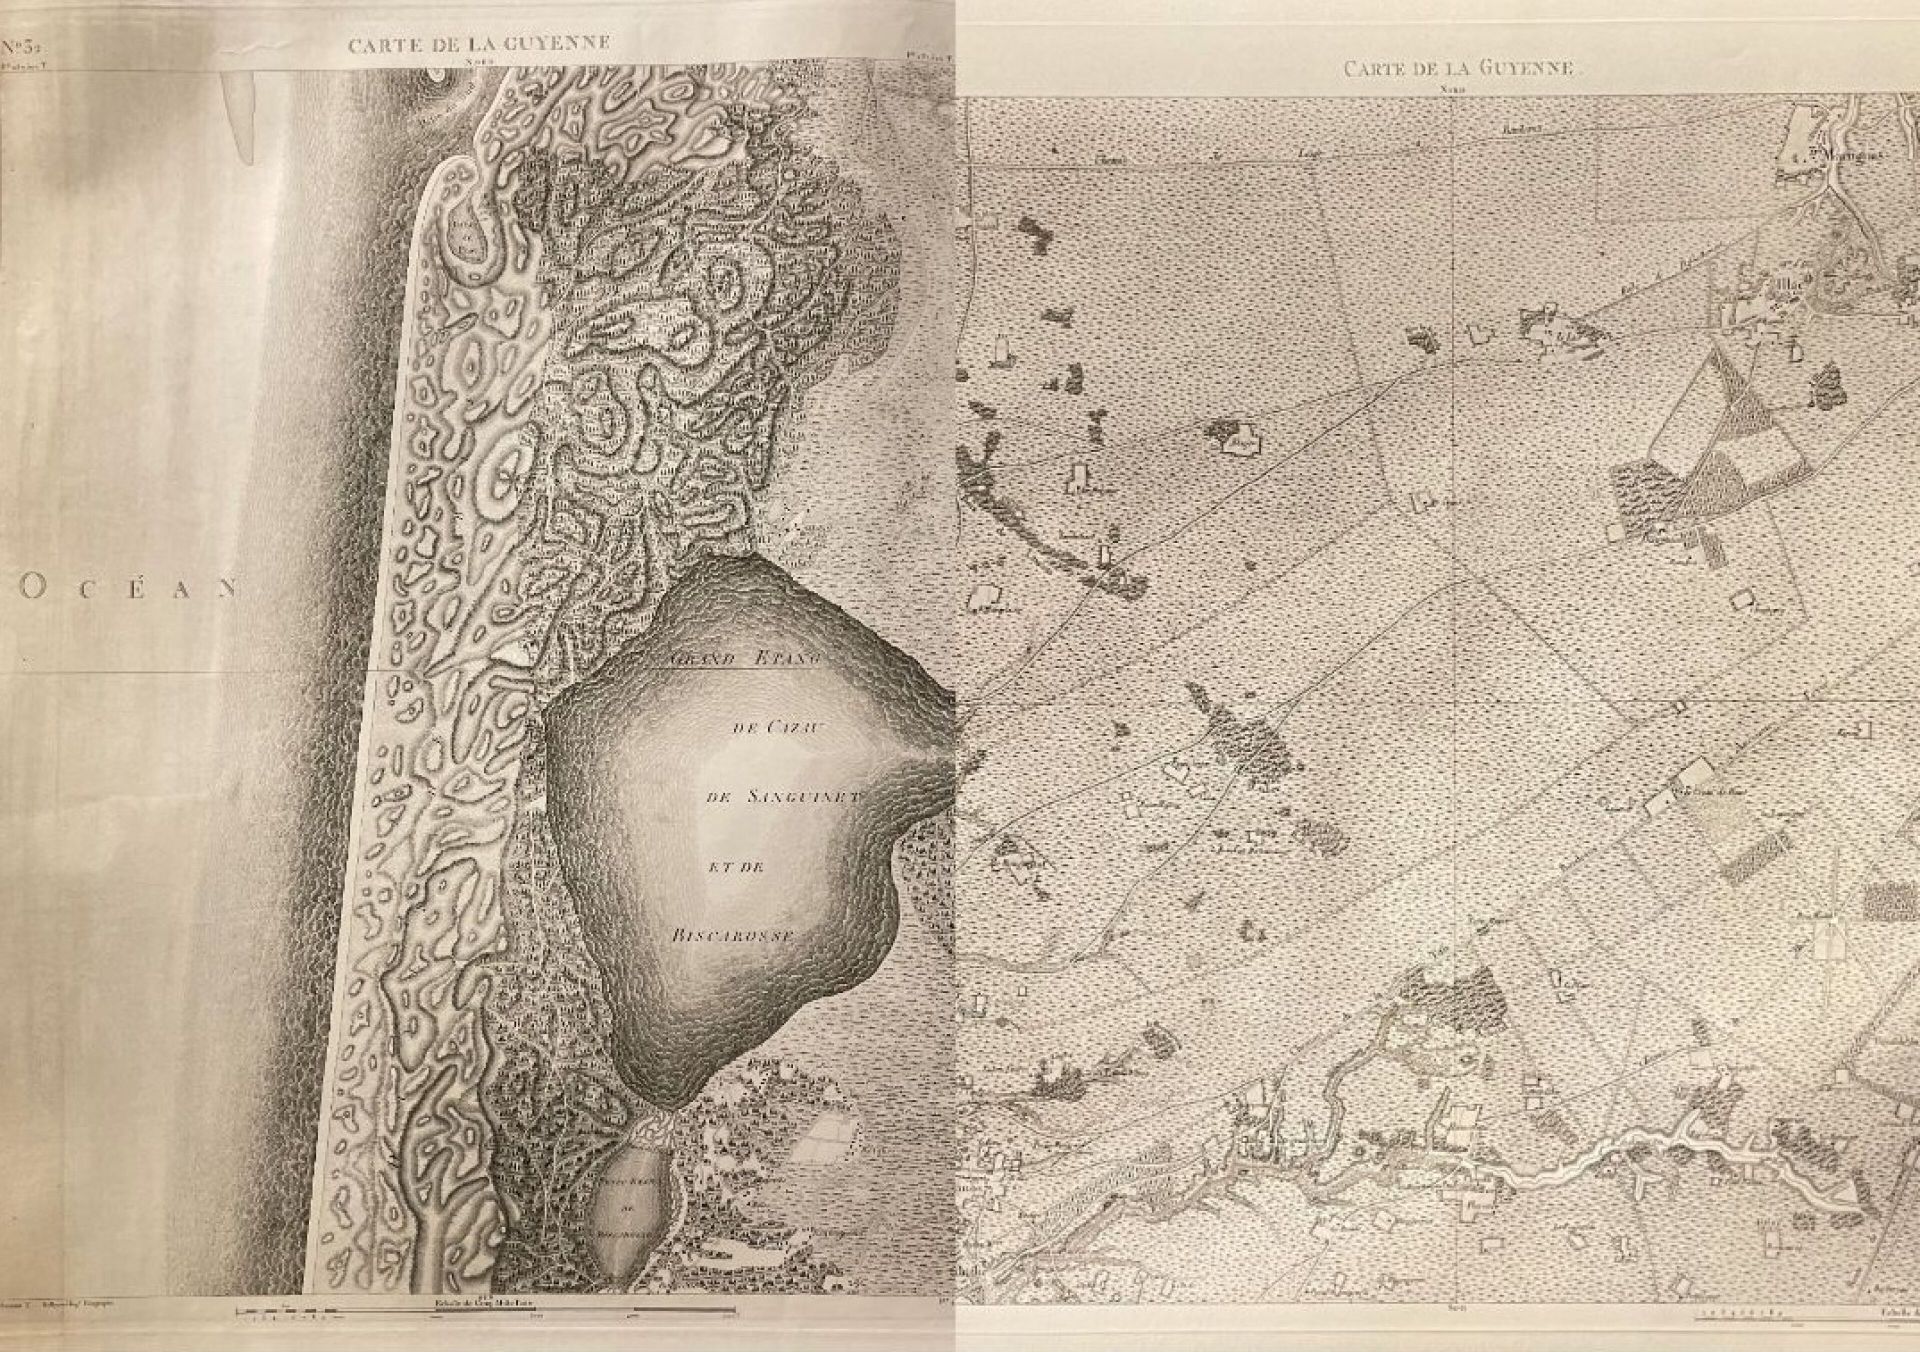 Null Pierre de BELLEYME（1747 - 1819），后--路易十五国王的地理工程师
圭亚那地图 
第 26 版（显示 Audenge、La&hellip;